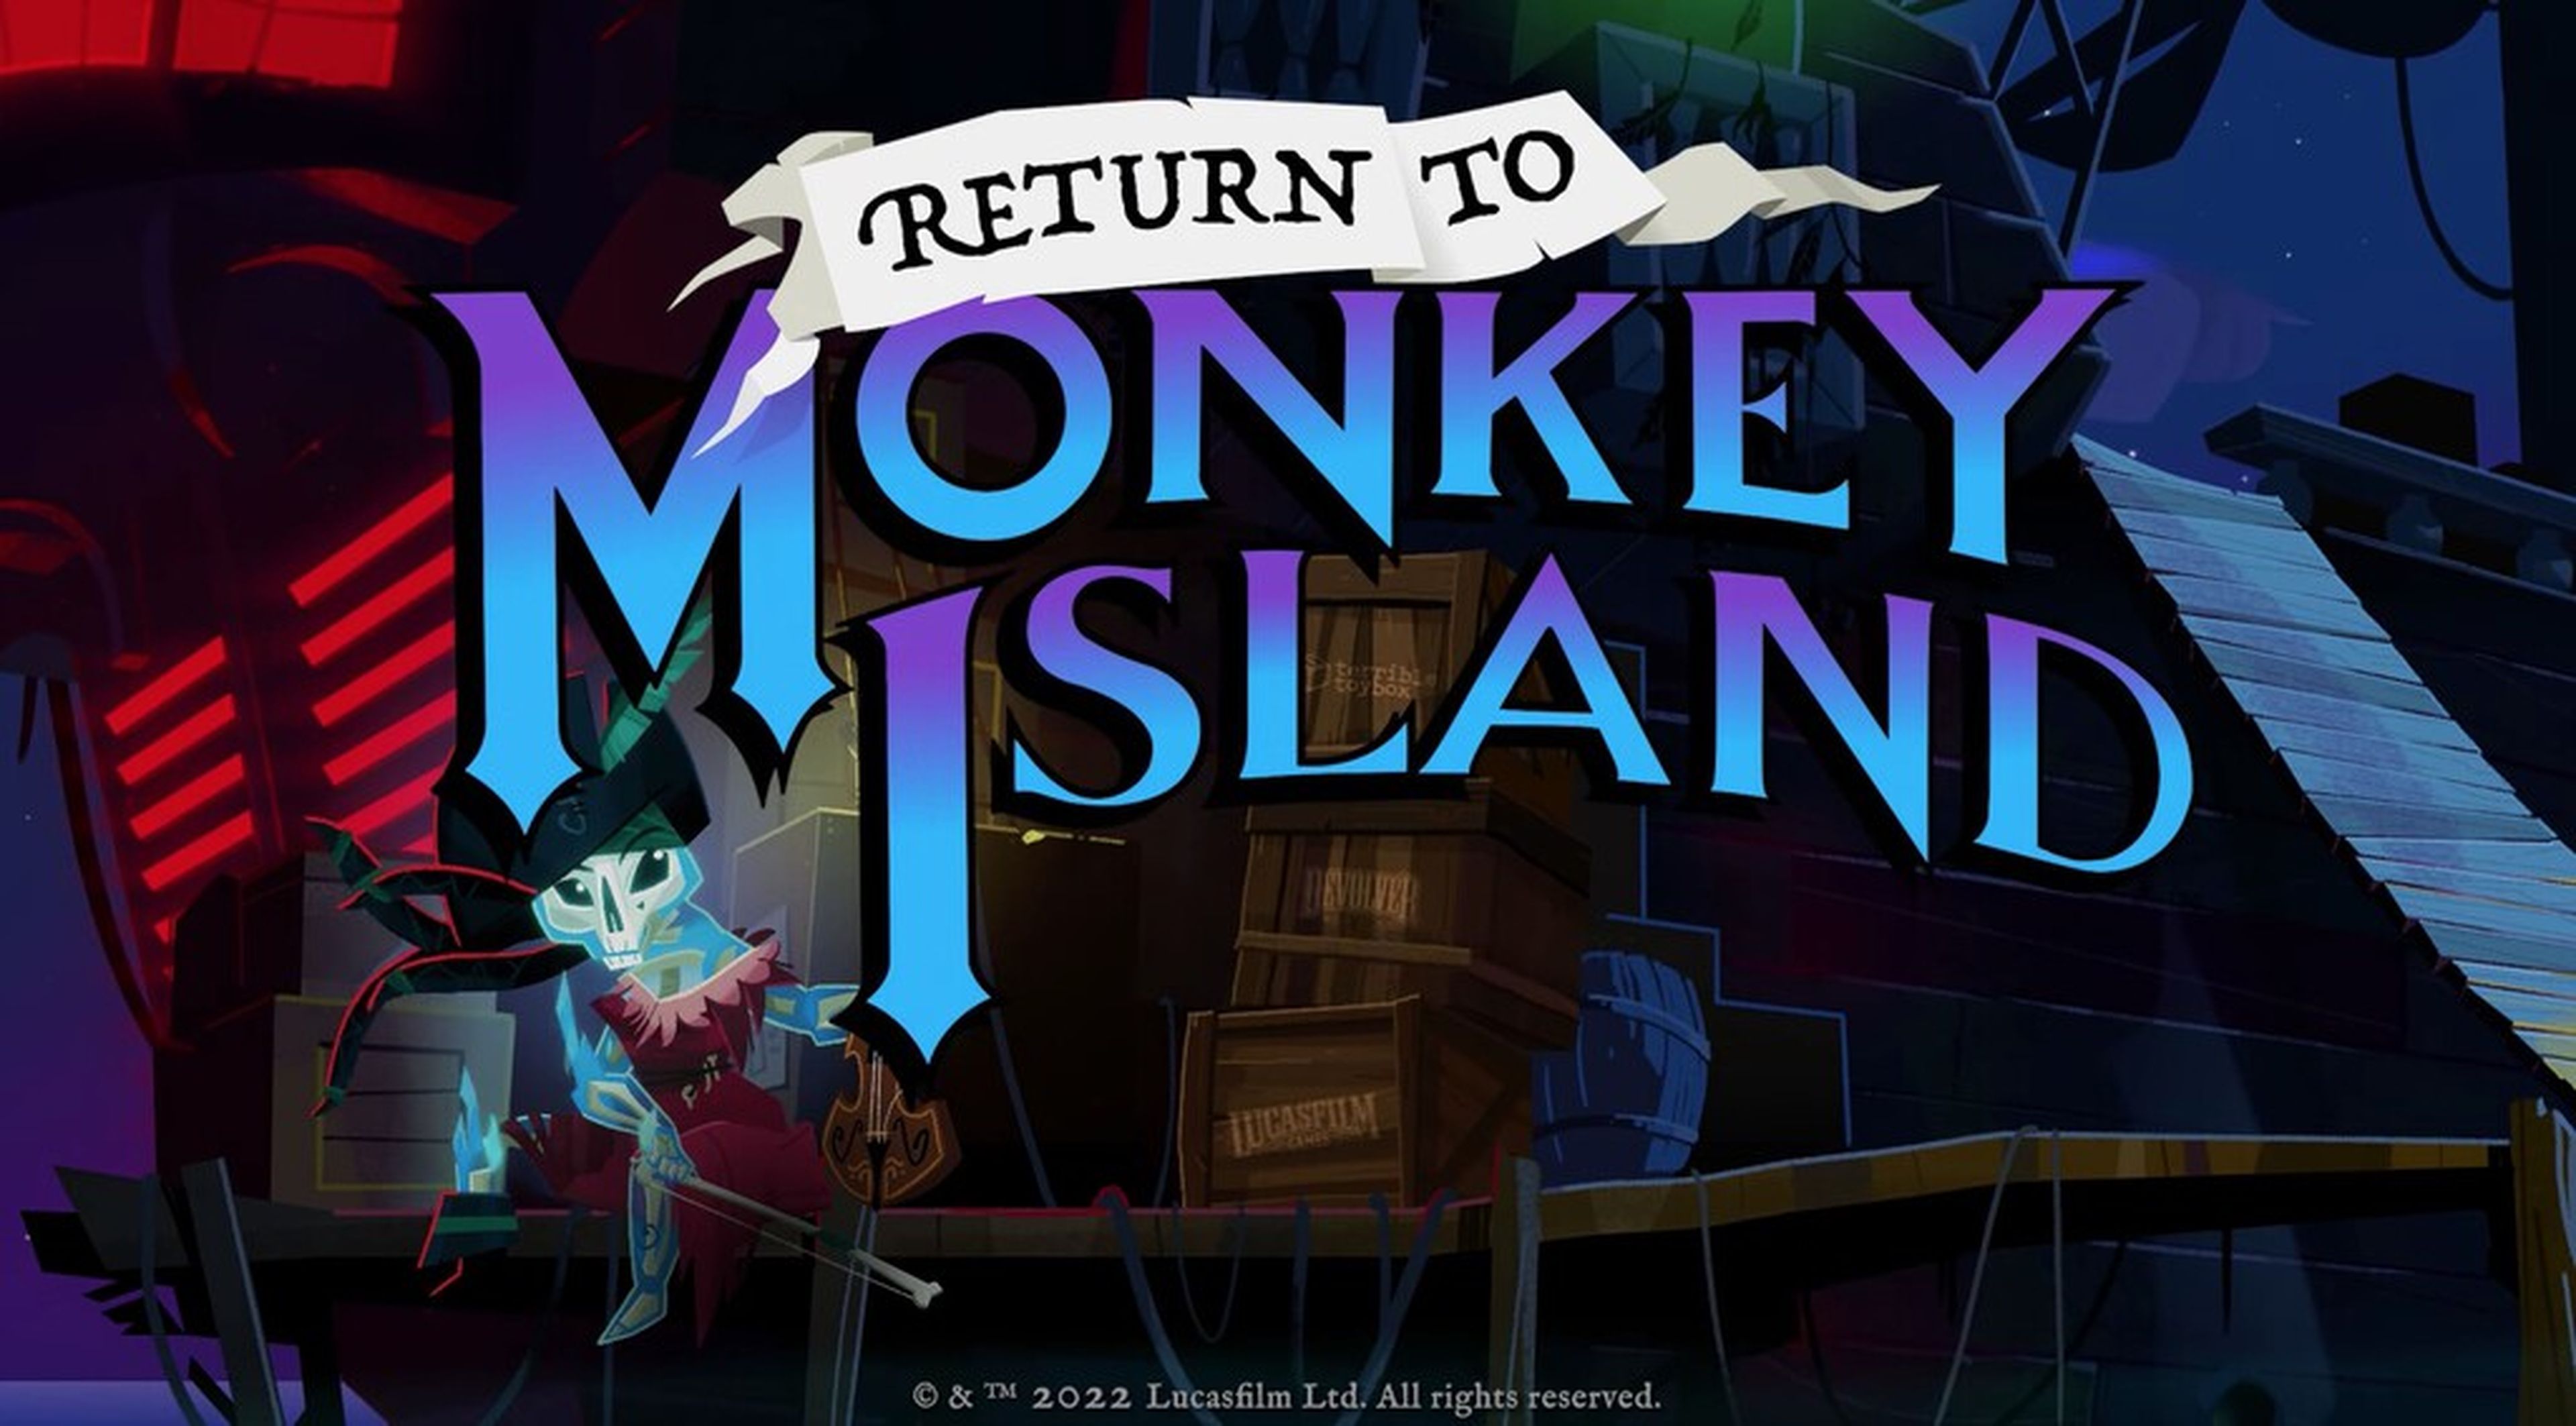 Return to Monkey Island llegará en 2022 y con ella una de las franquicias más conocidas de los videojuegos